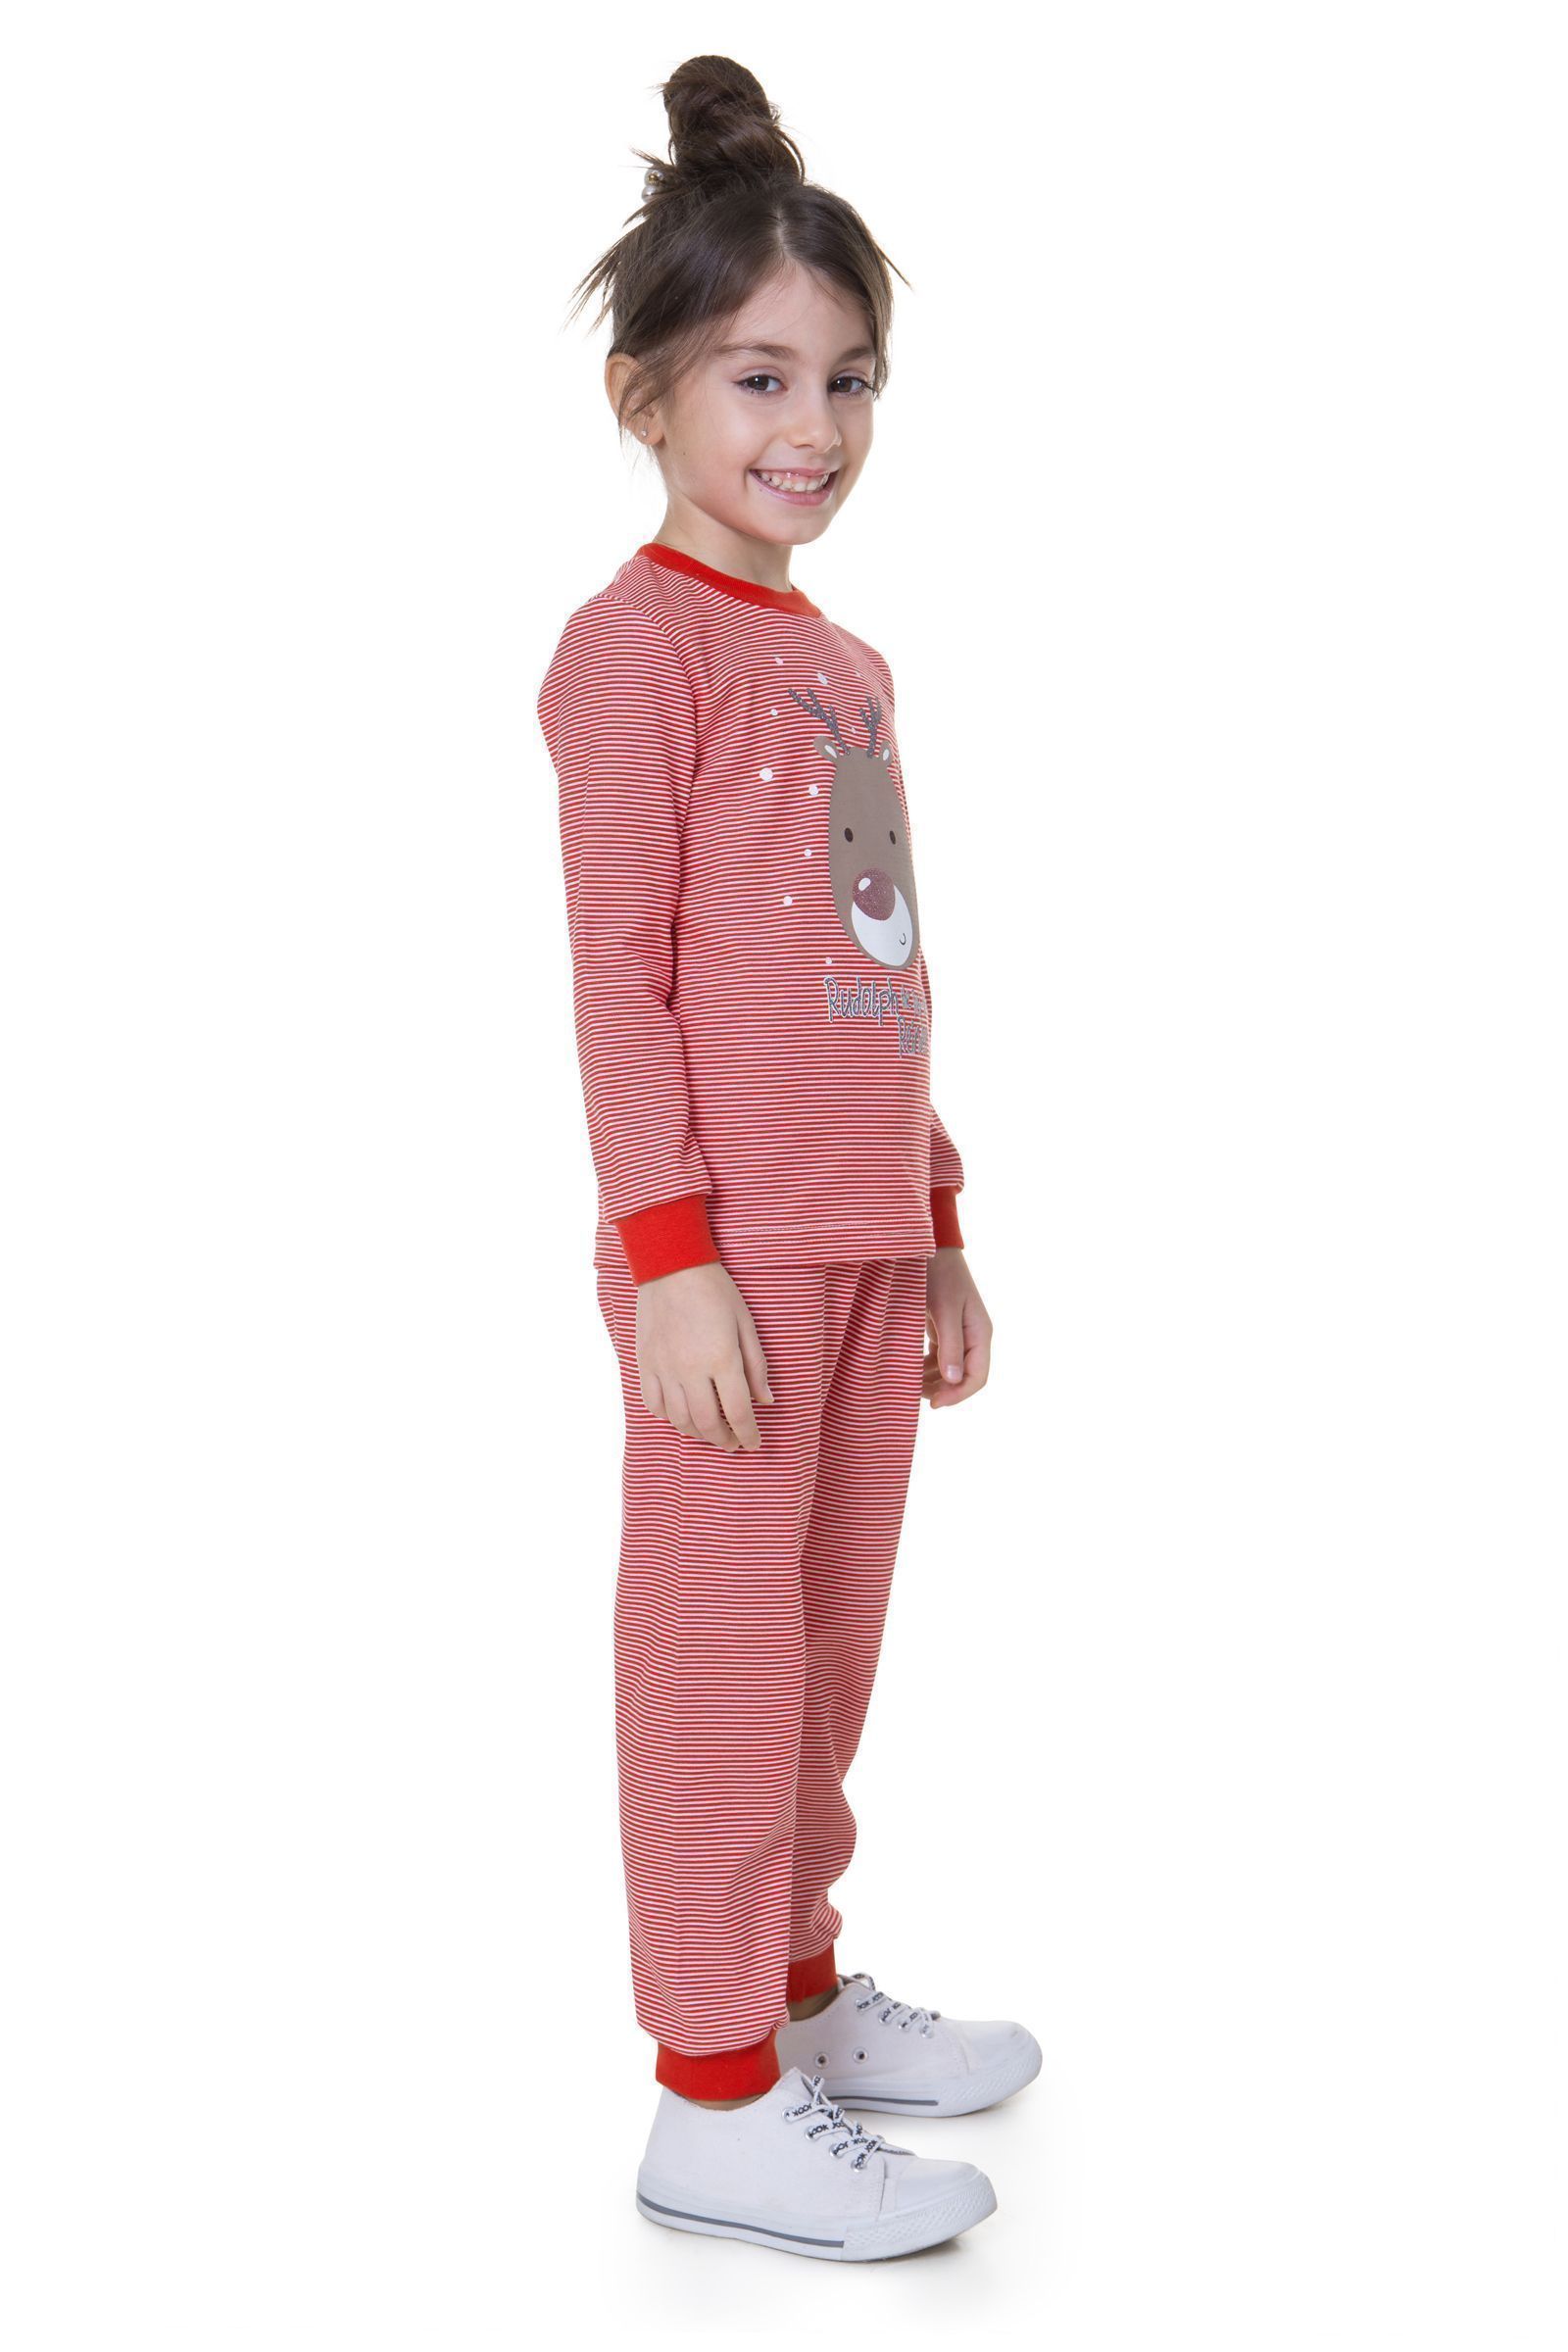 Пижама-ПЖ01-3462 оптом от производителя детской одежды 'Алёна'